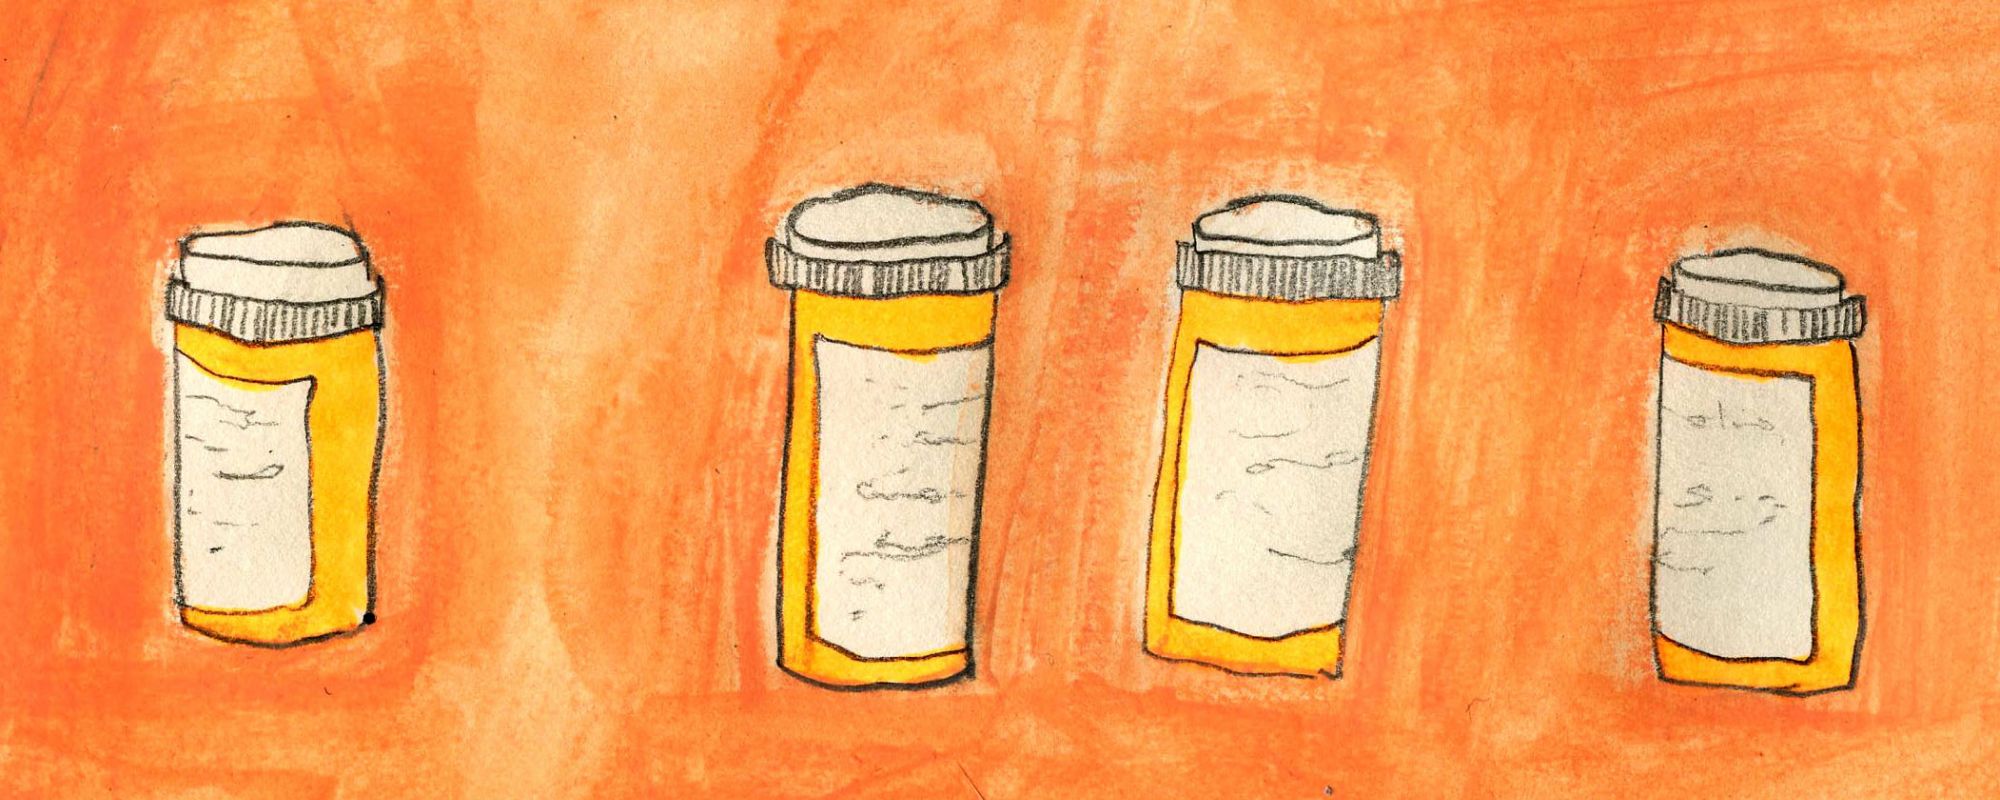 Orange pill bottles